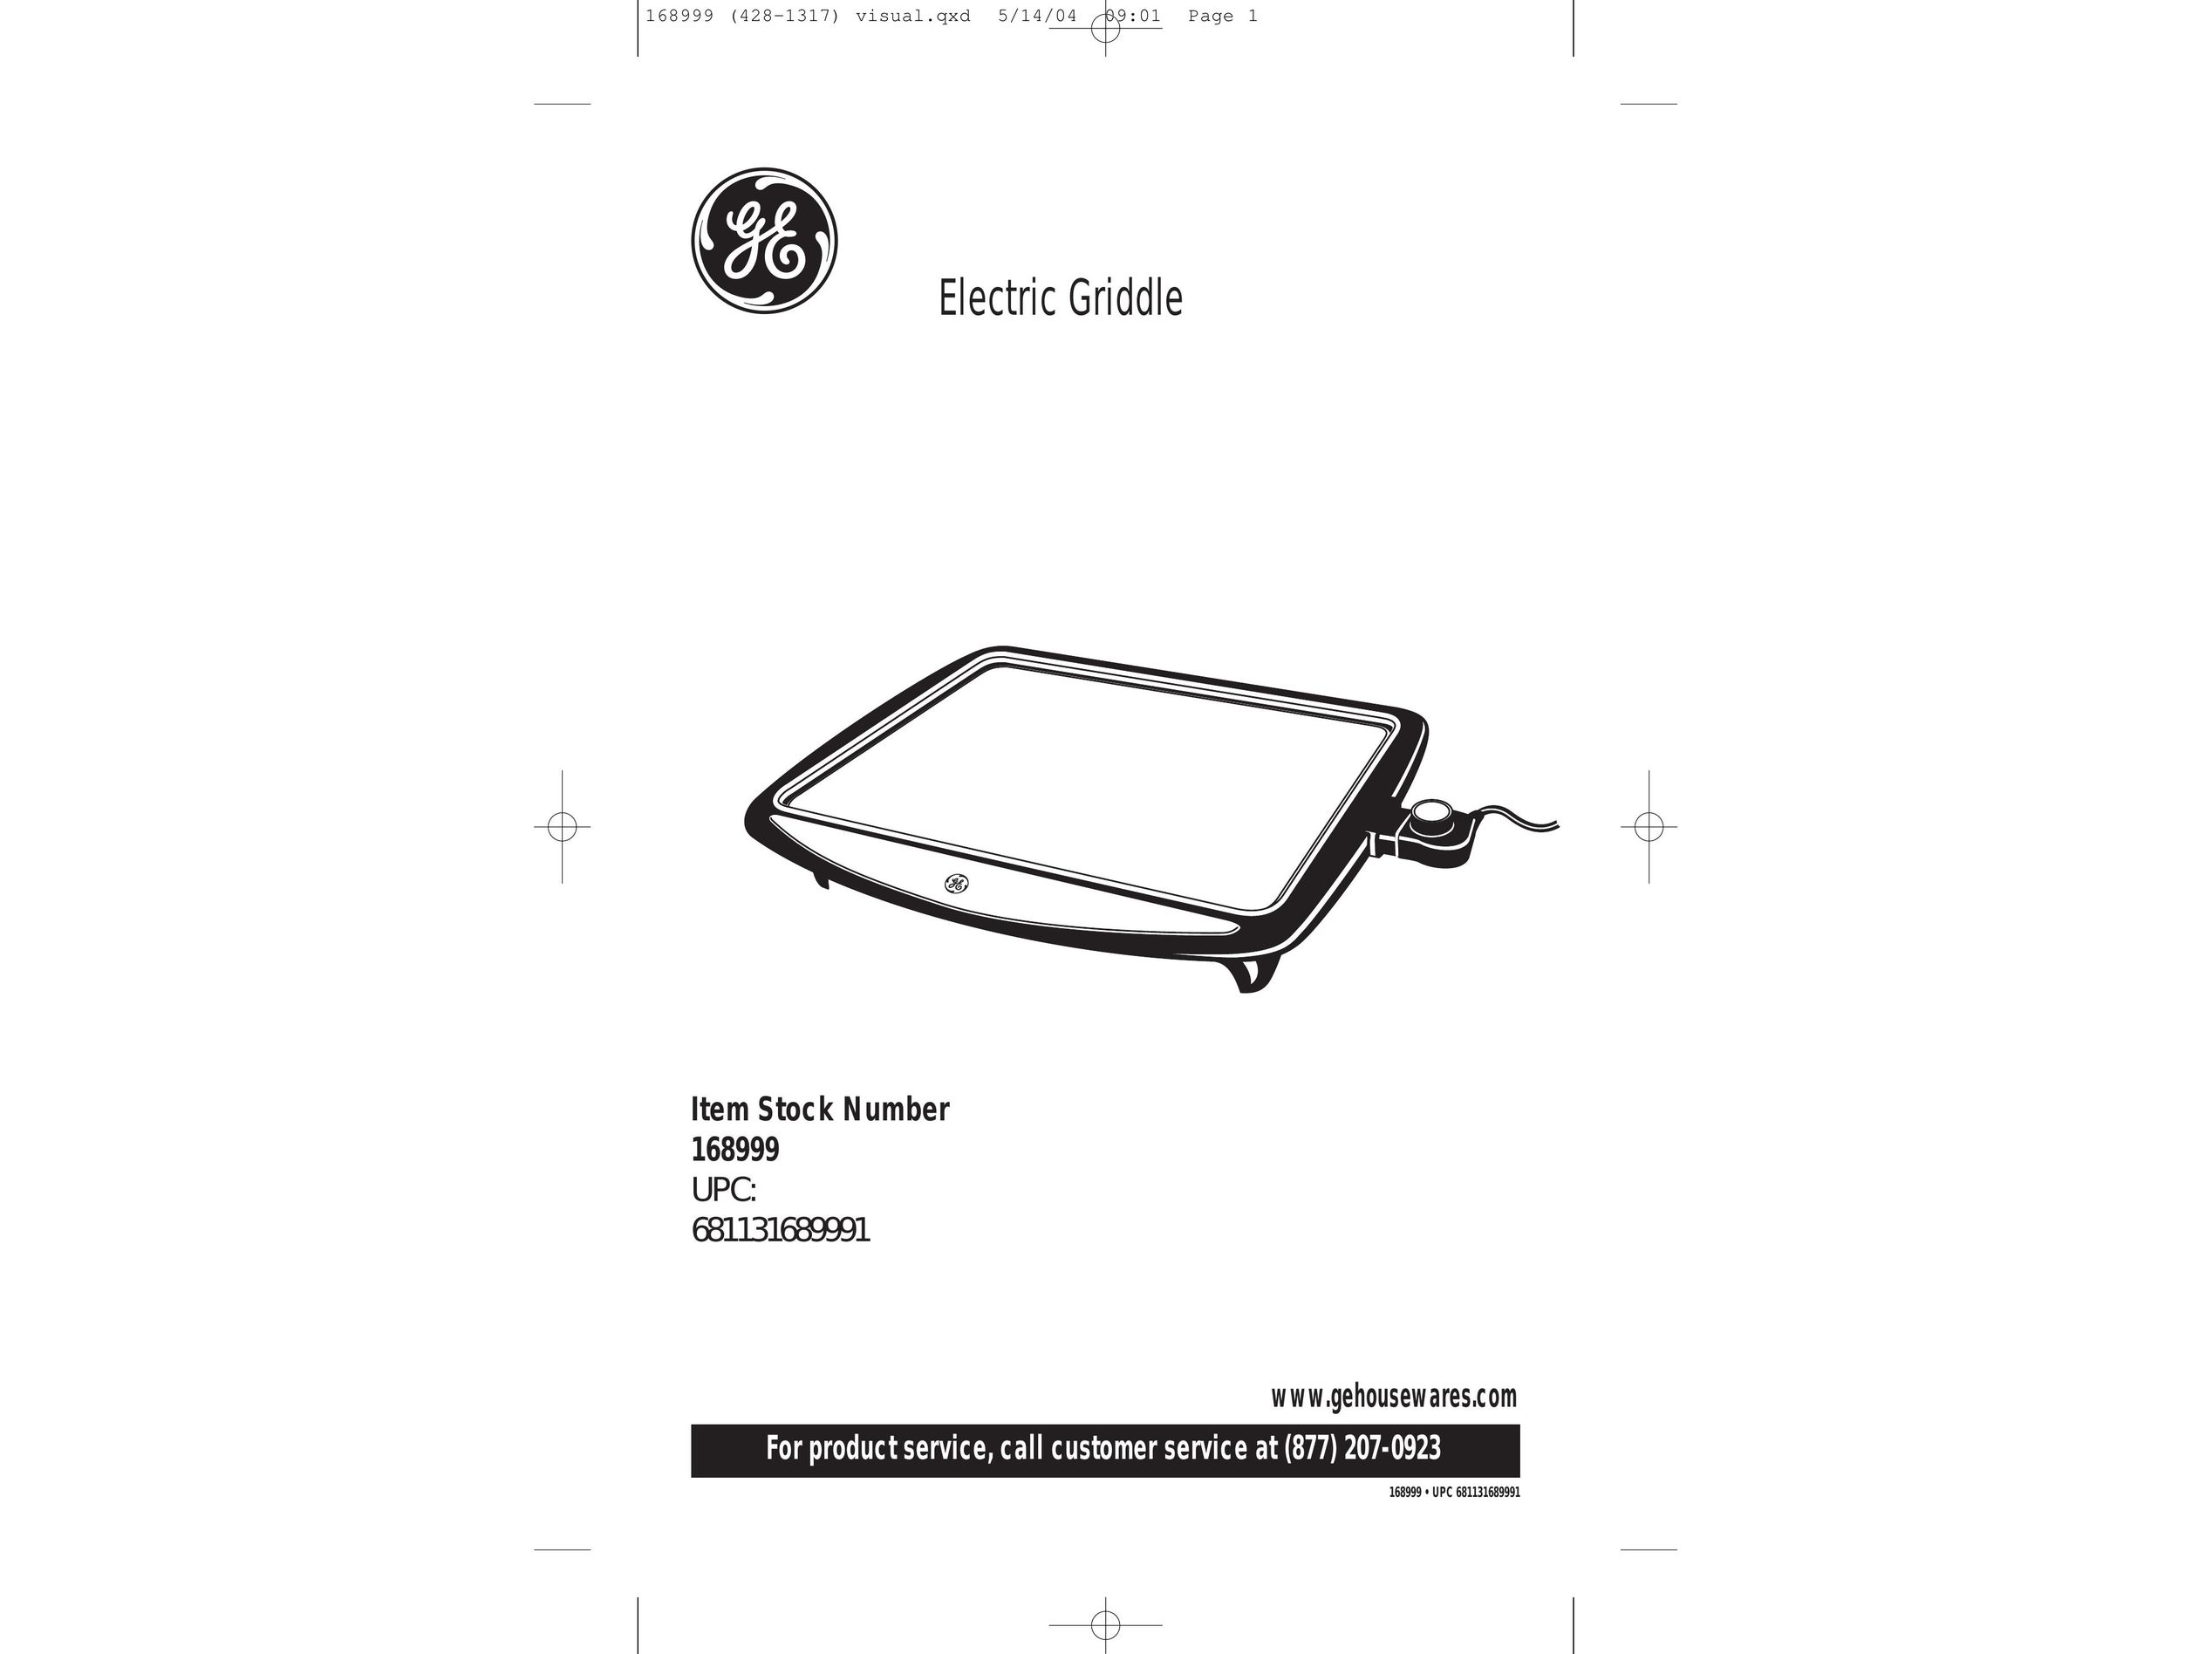 GE 681131689991 Griddle User Manual